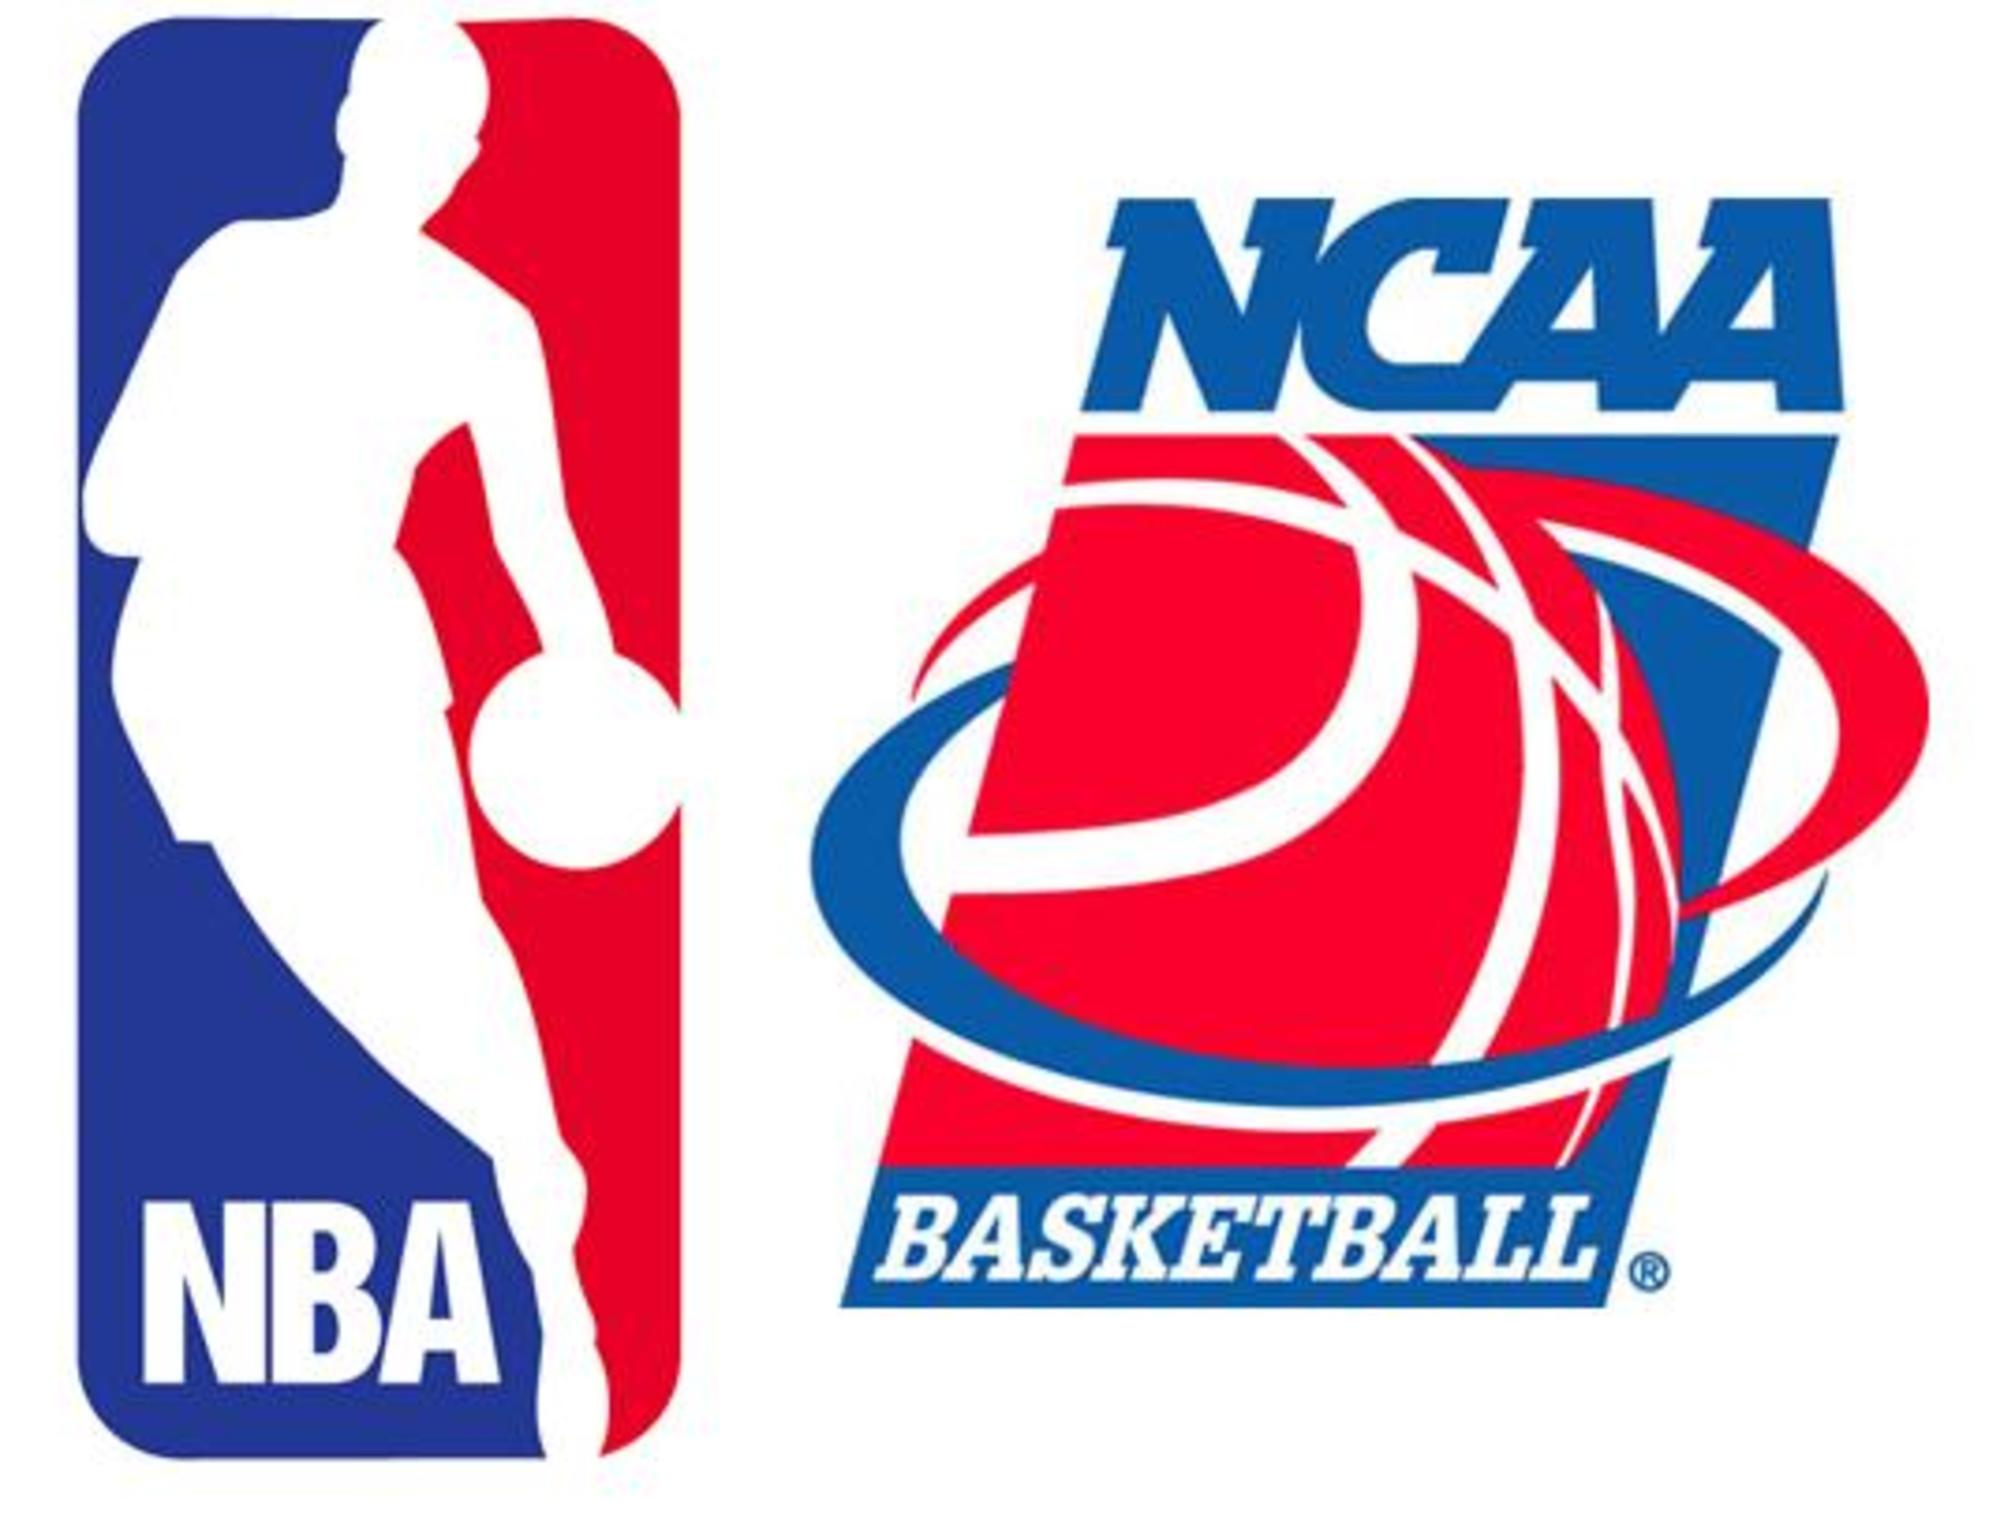 NBA logo next to NCAA logo